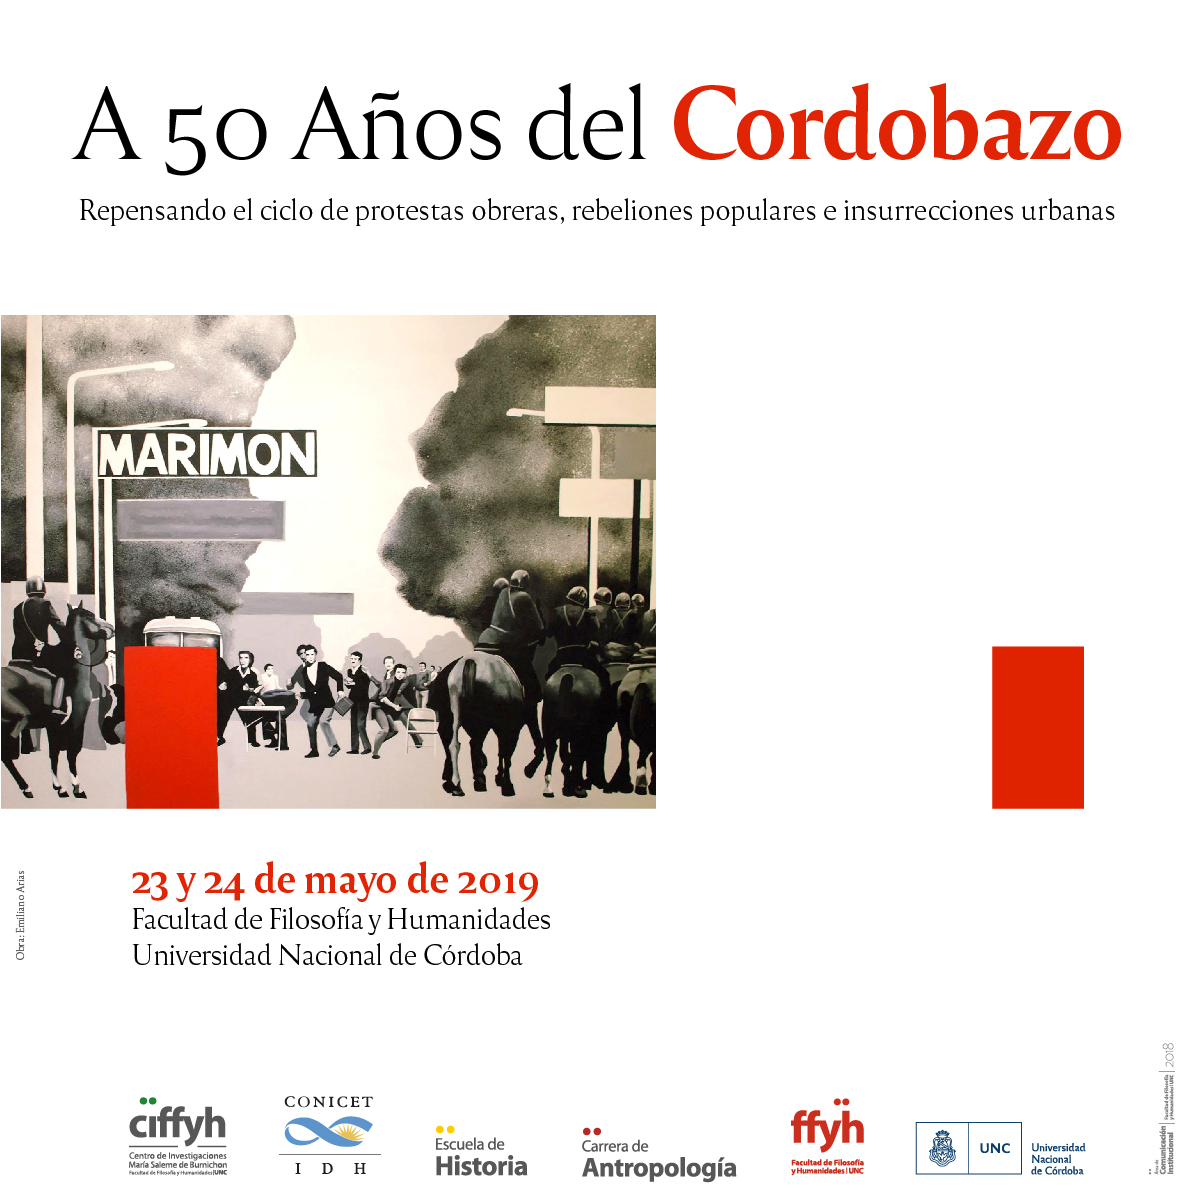 A 50 AÑOS DEL CORDOBAZO: Repensando el ciclo de protestas obreras, rebeliones populares e insurrecciones urbanas